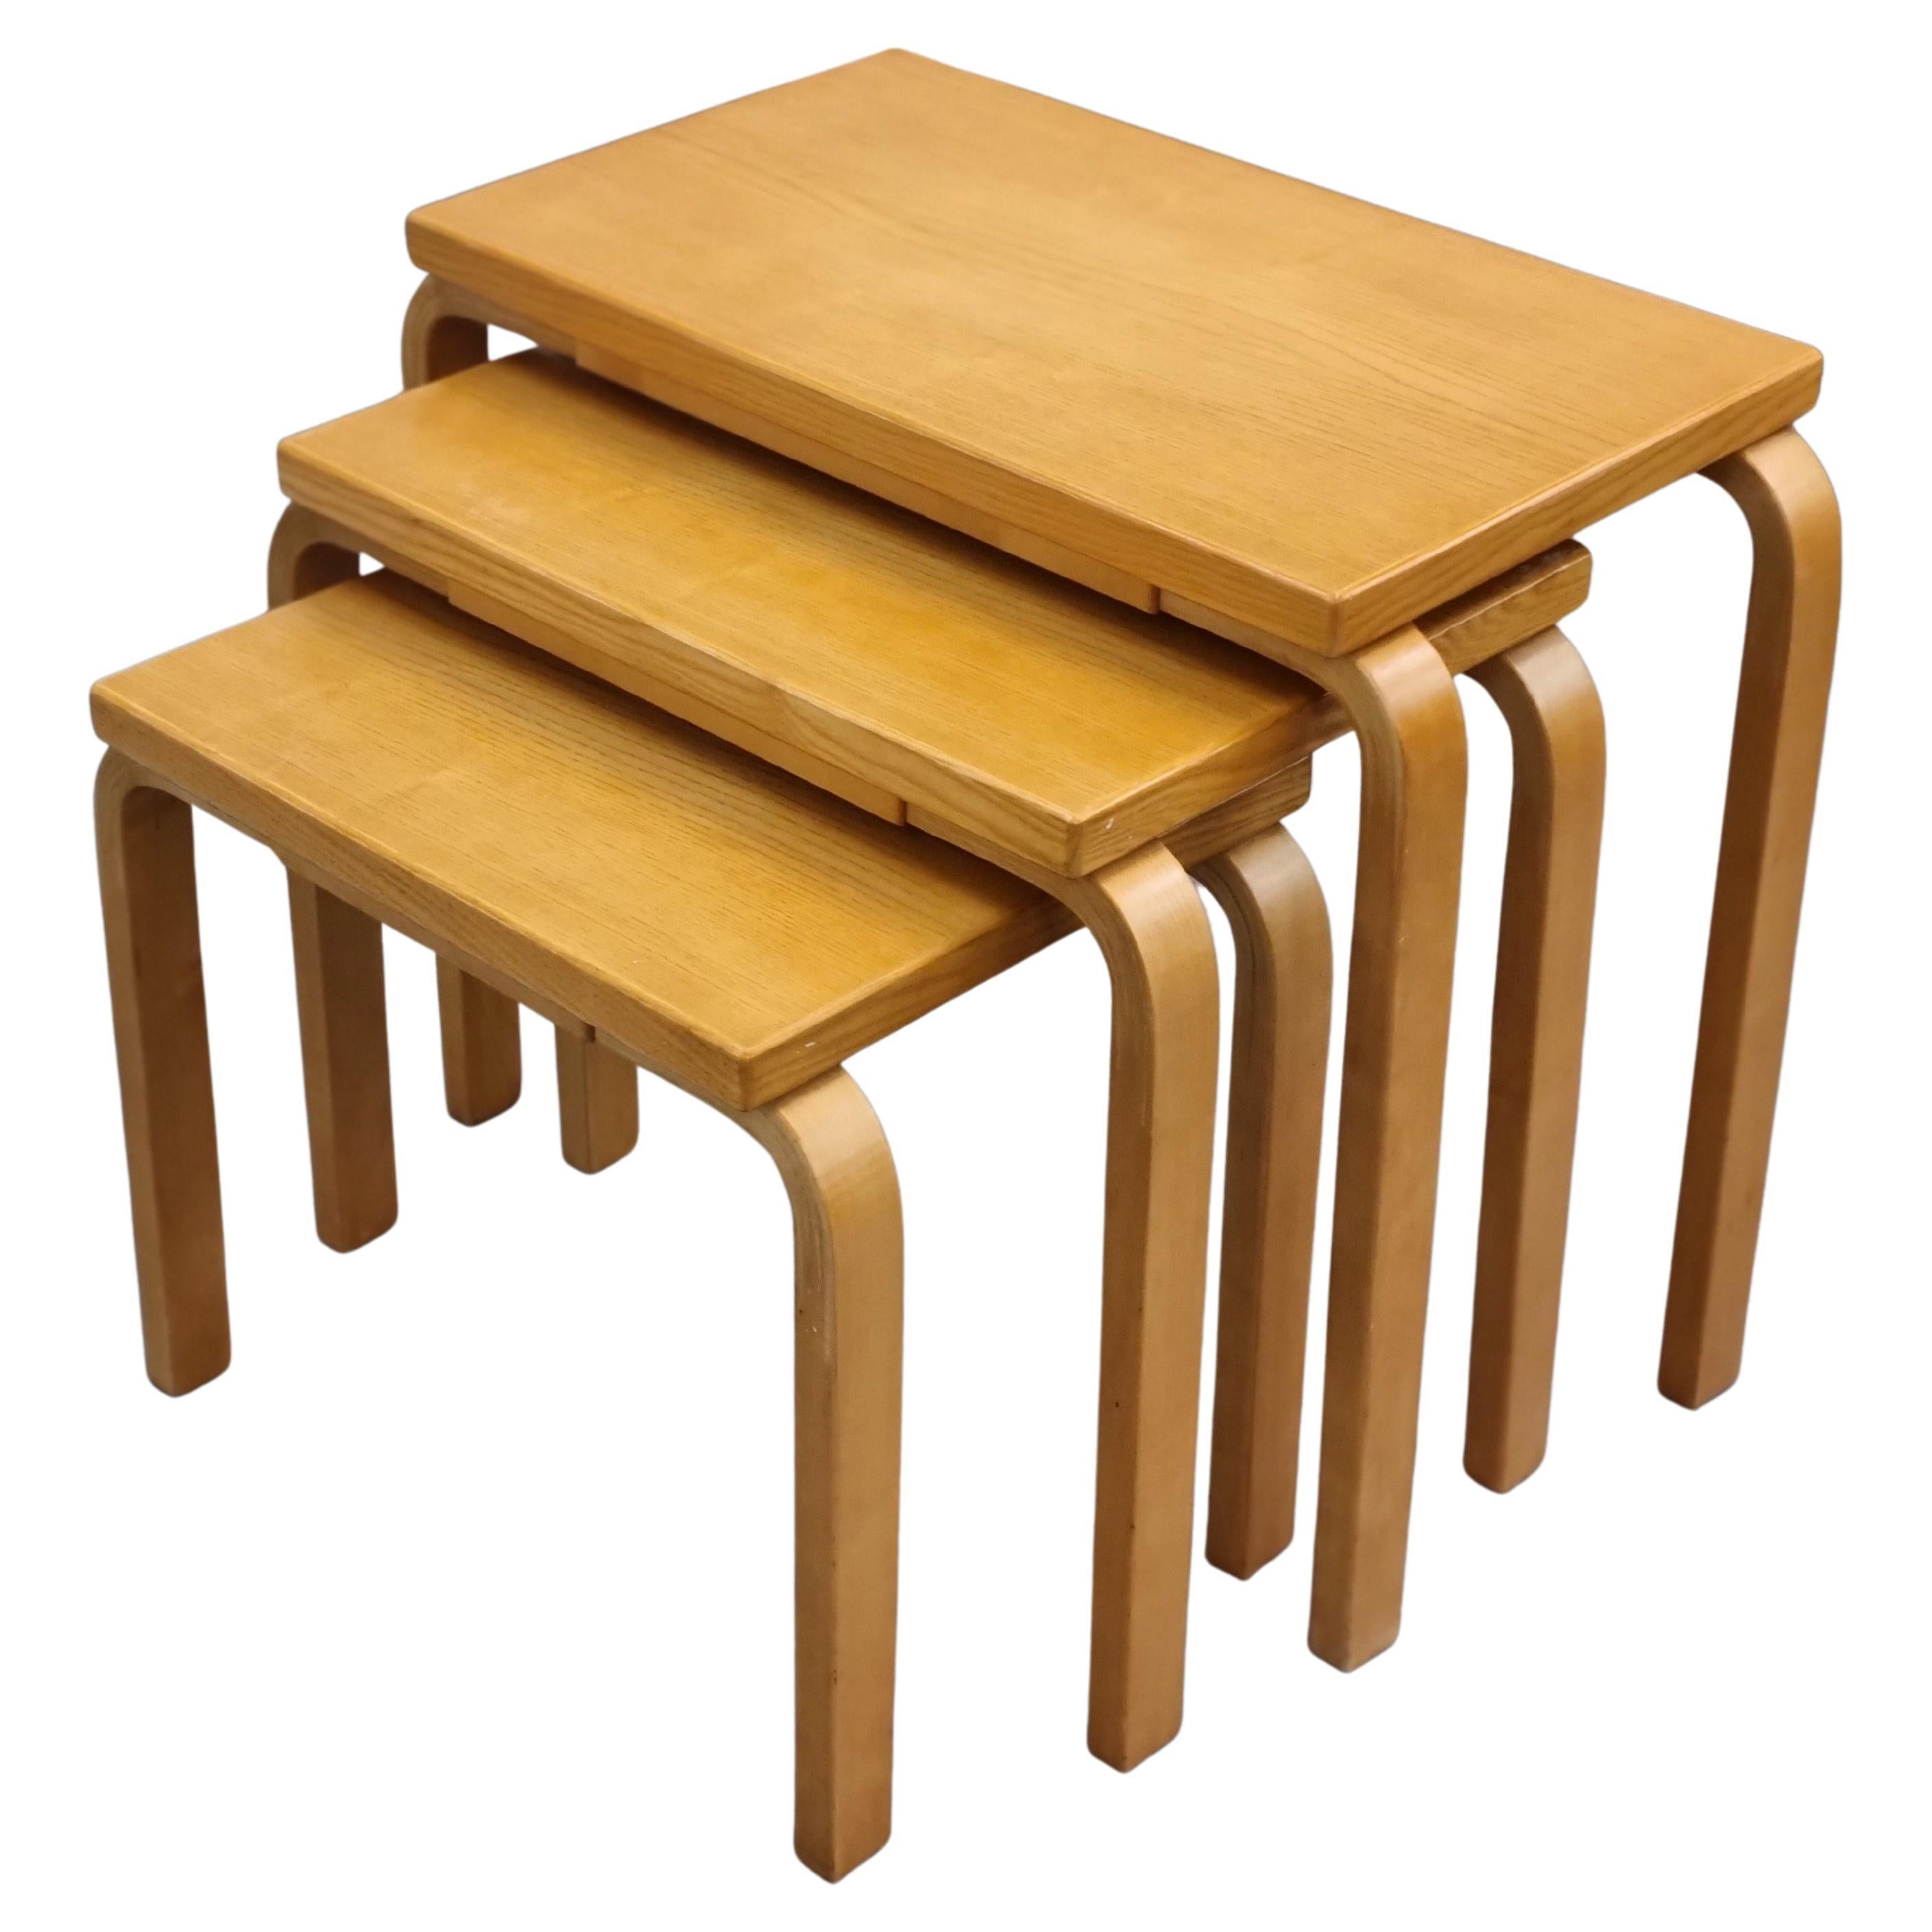 Ensemble de tables gigognes Alvar Aalto Modèle E88, Artek, années 1950